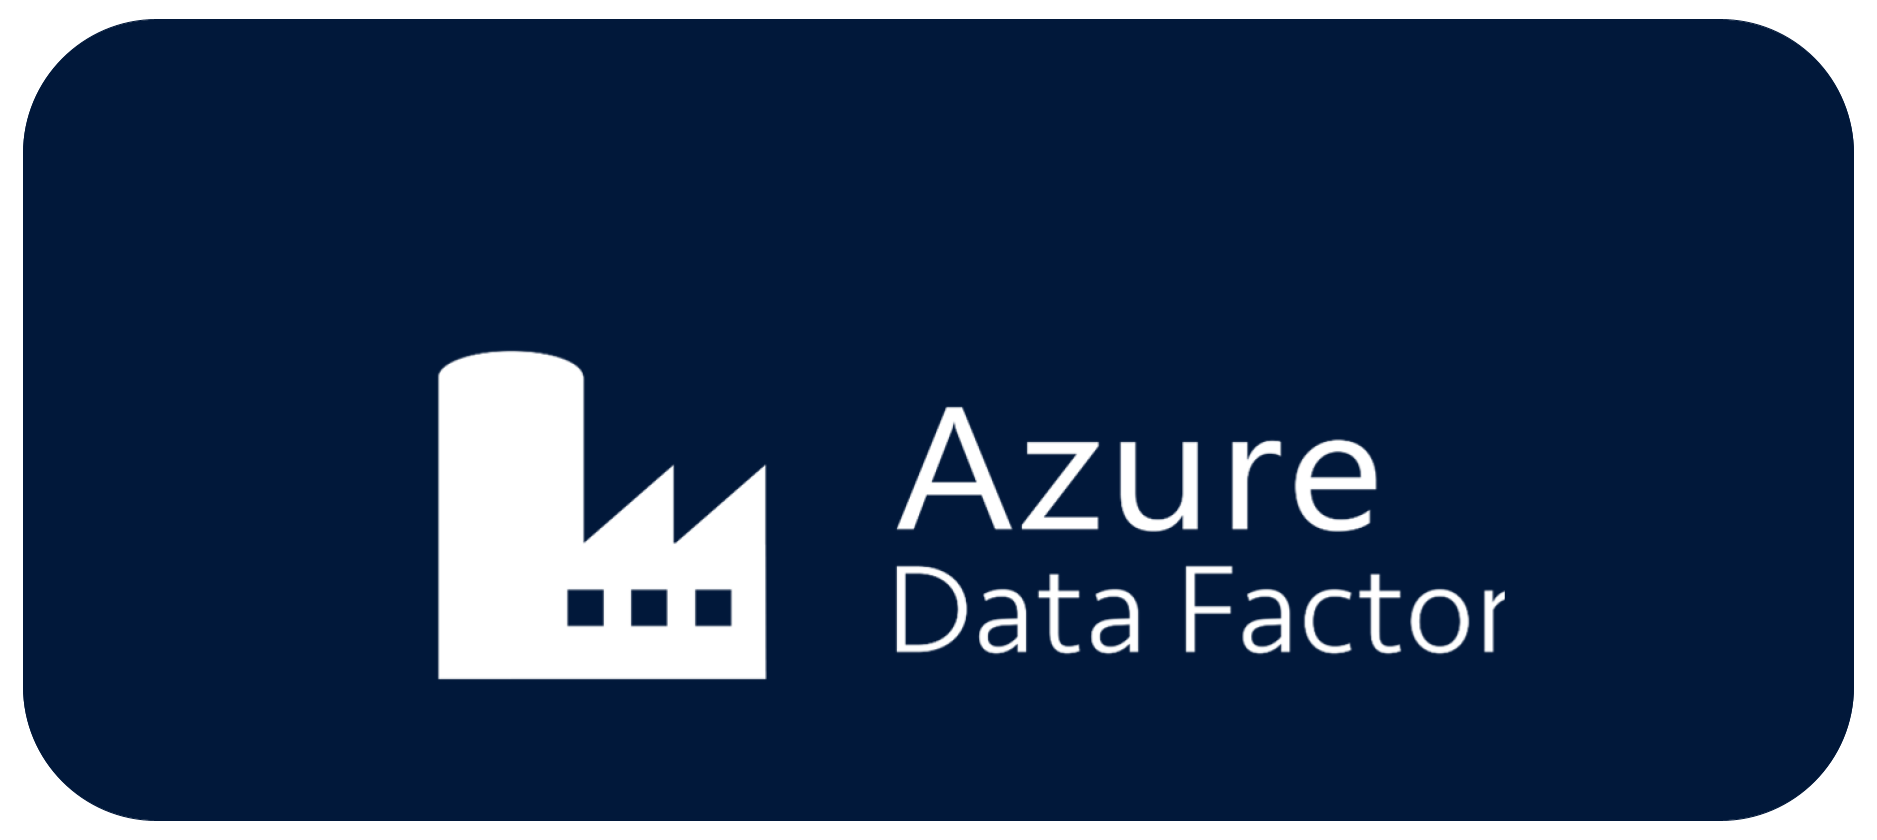 Logo Azure Data Factory off-centered dark background